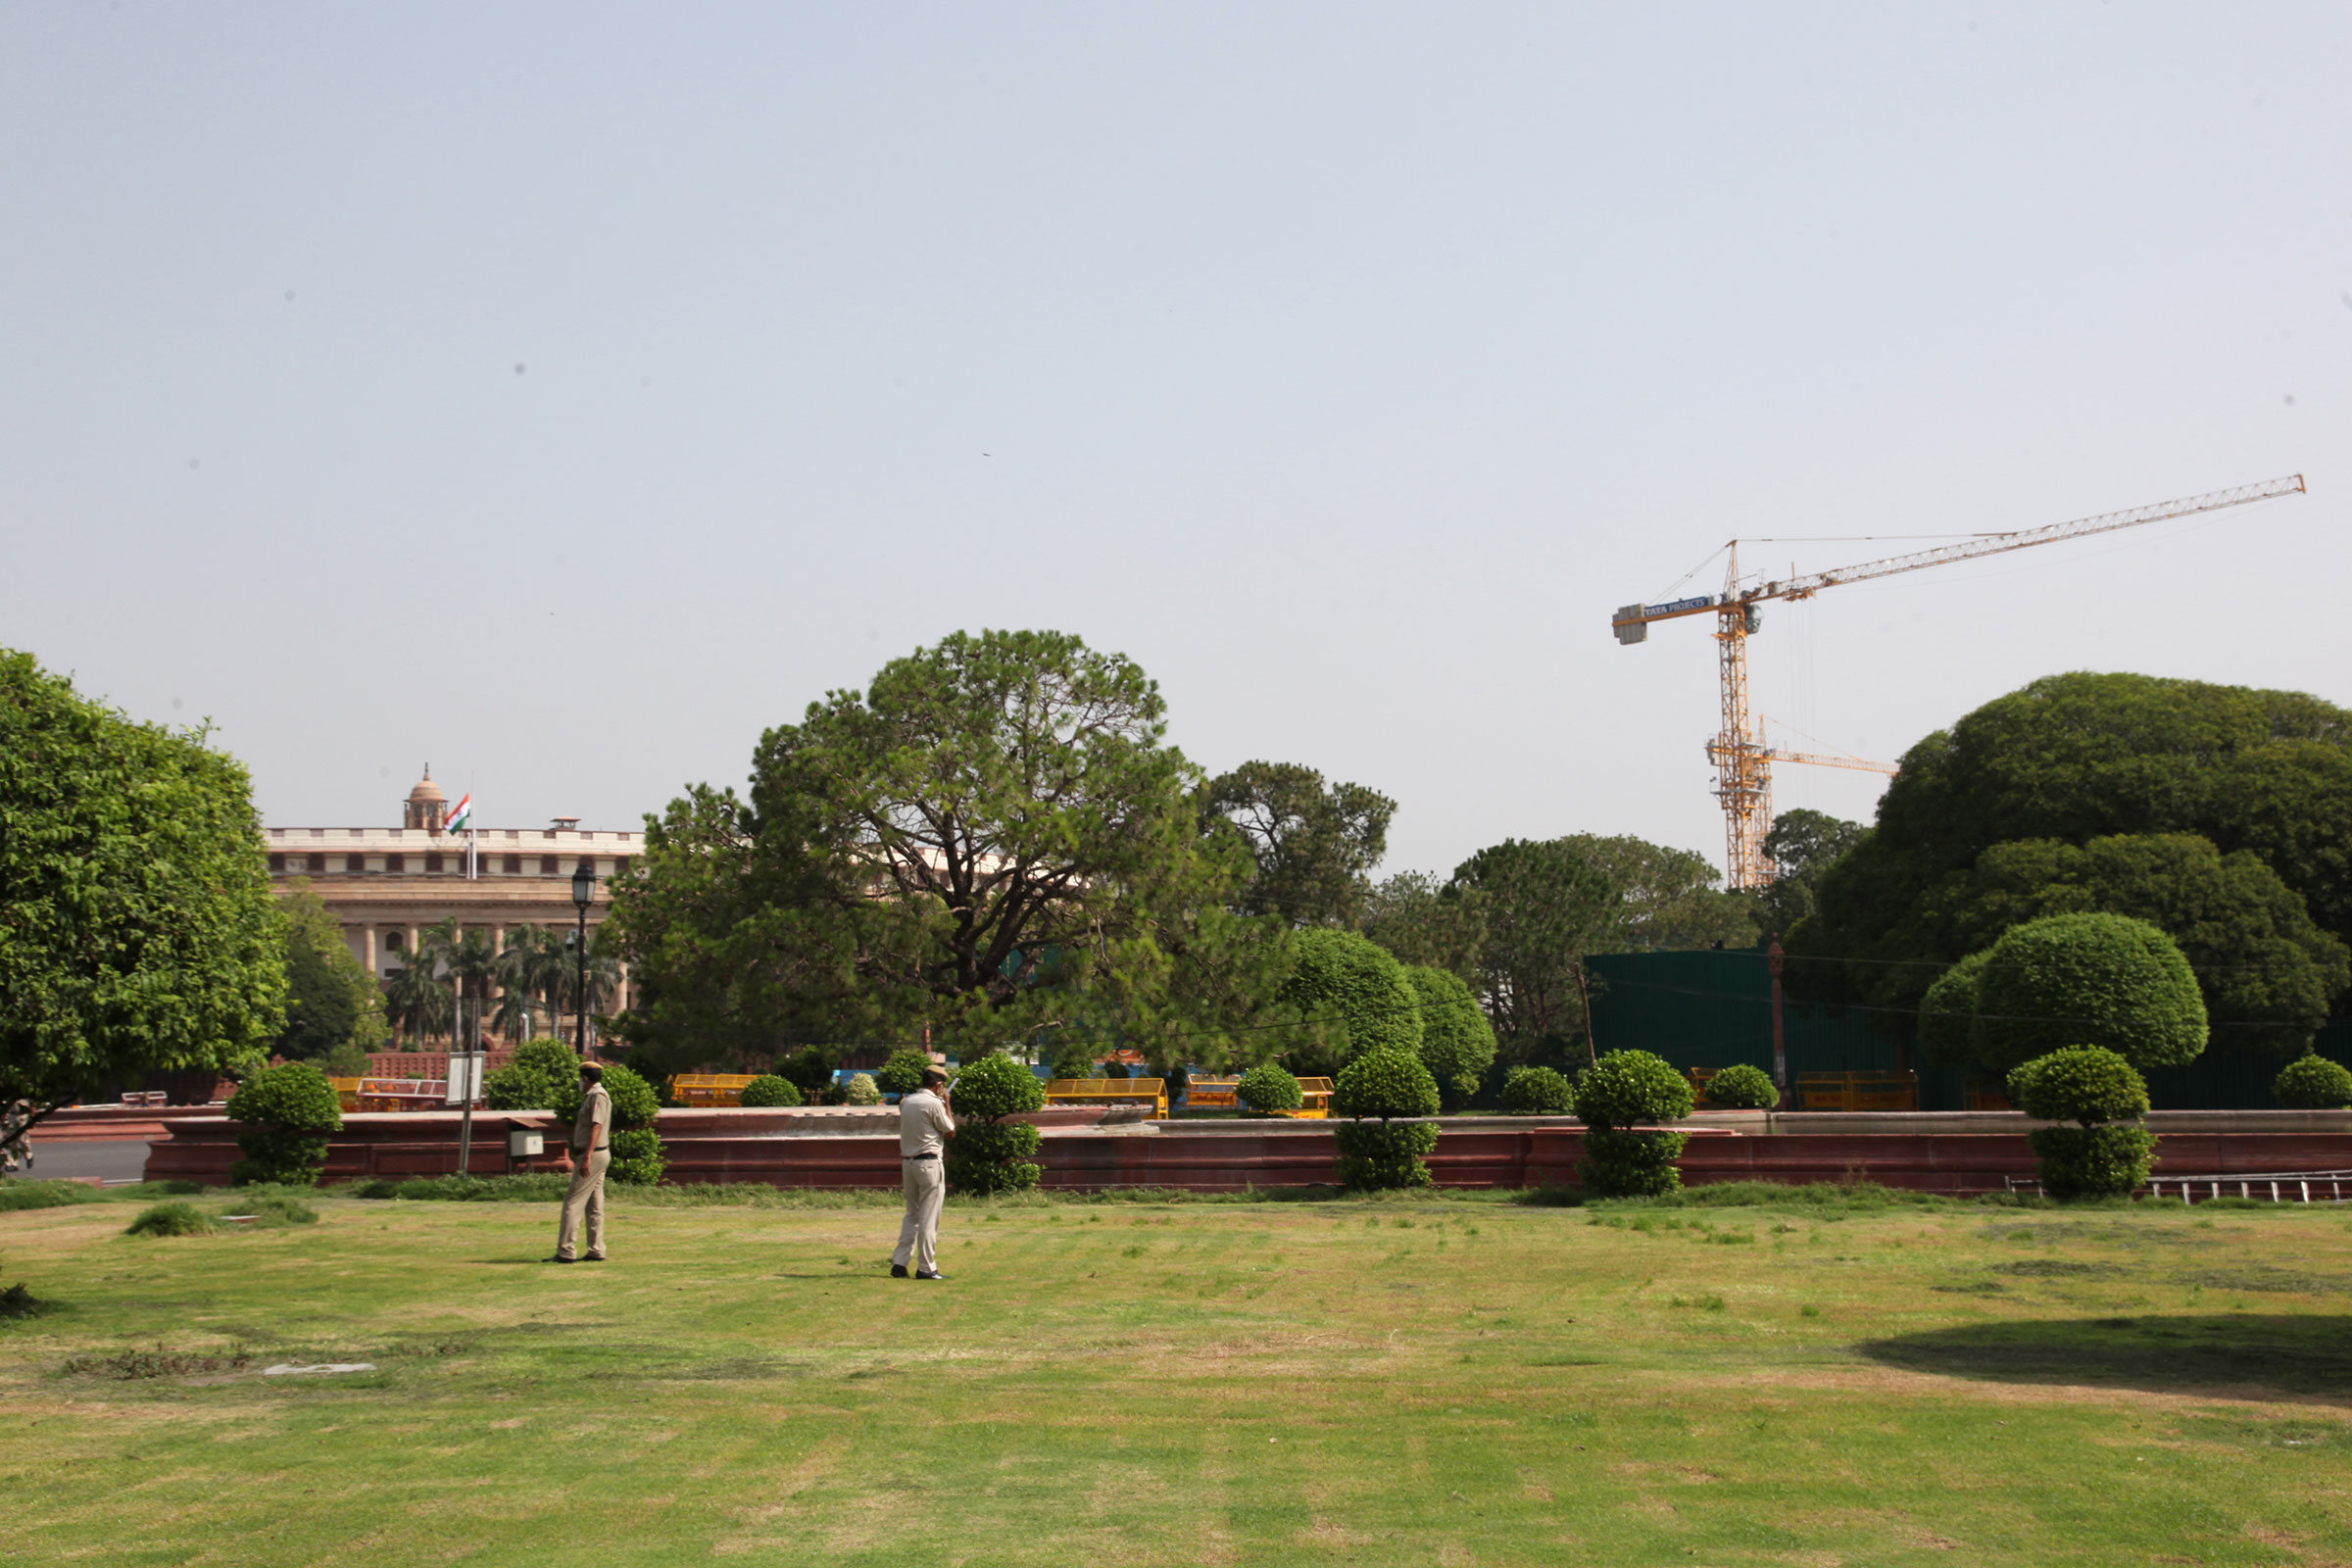 El edificio patrimonial redondo del Parlamento indio se puede ver con enormes grúas para la construcción del nuevo edificio del Parlamento el 5 de junio de 2021. (Pallava Bagla—Corbis/Getty Images)